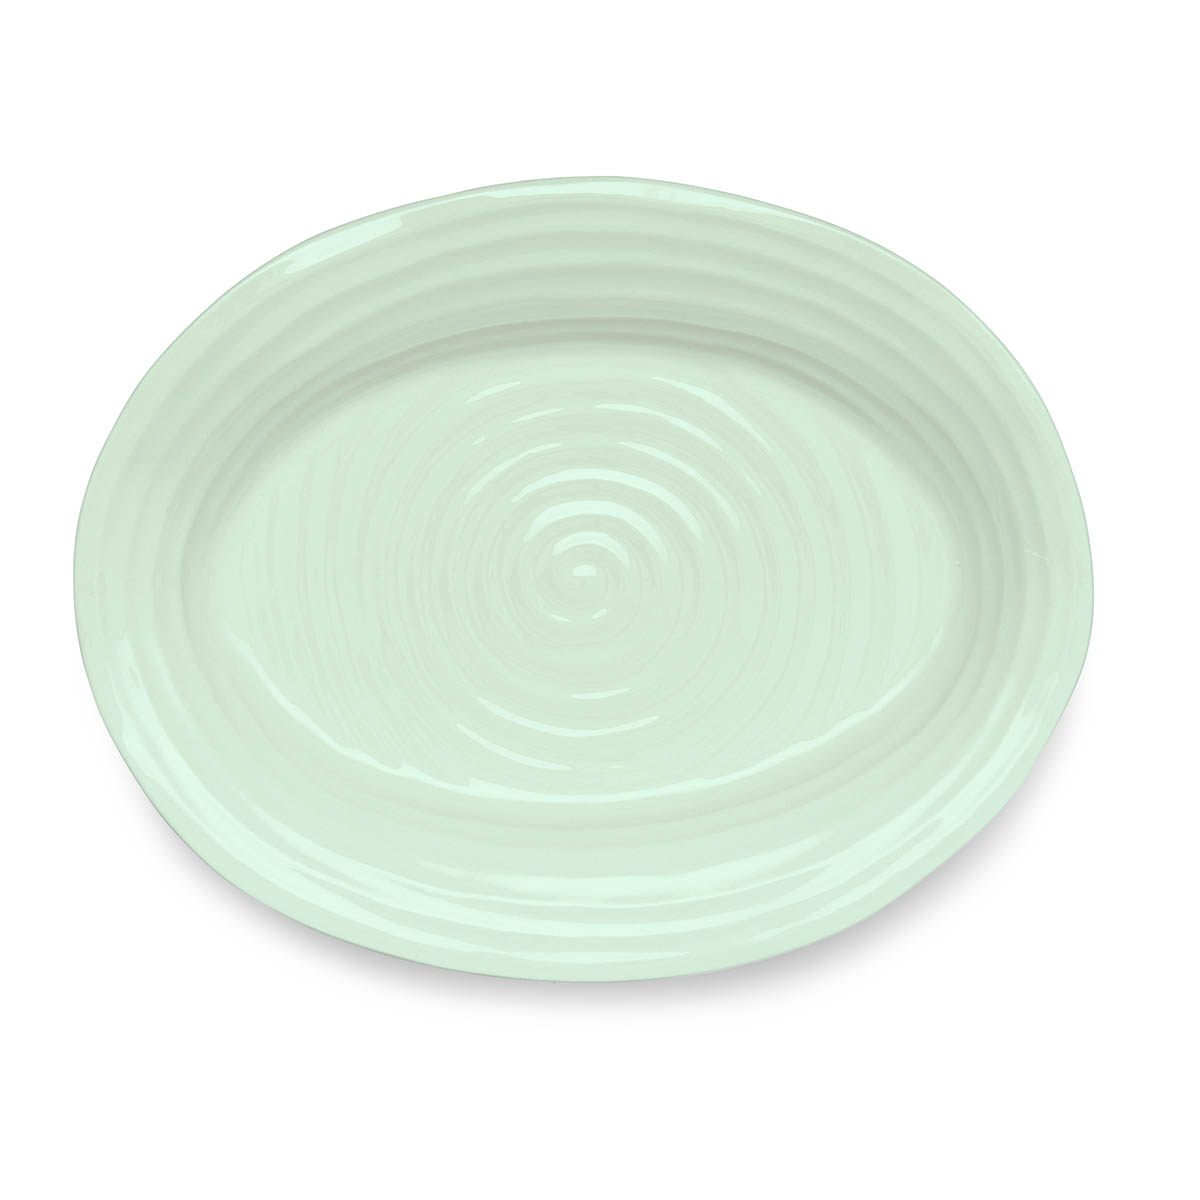 Sophie Conran Celadon Medium Oval Platter image number null